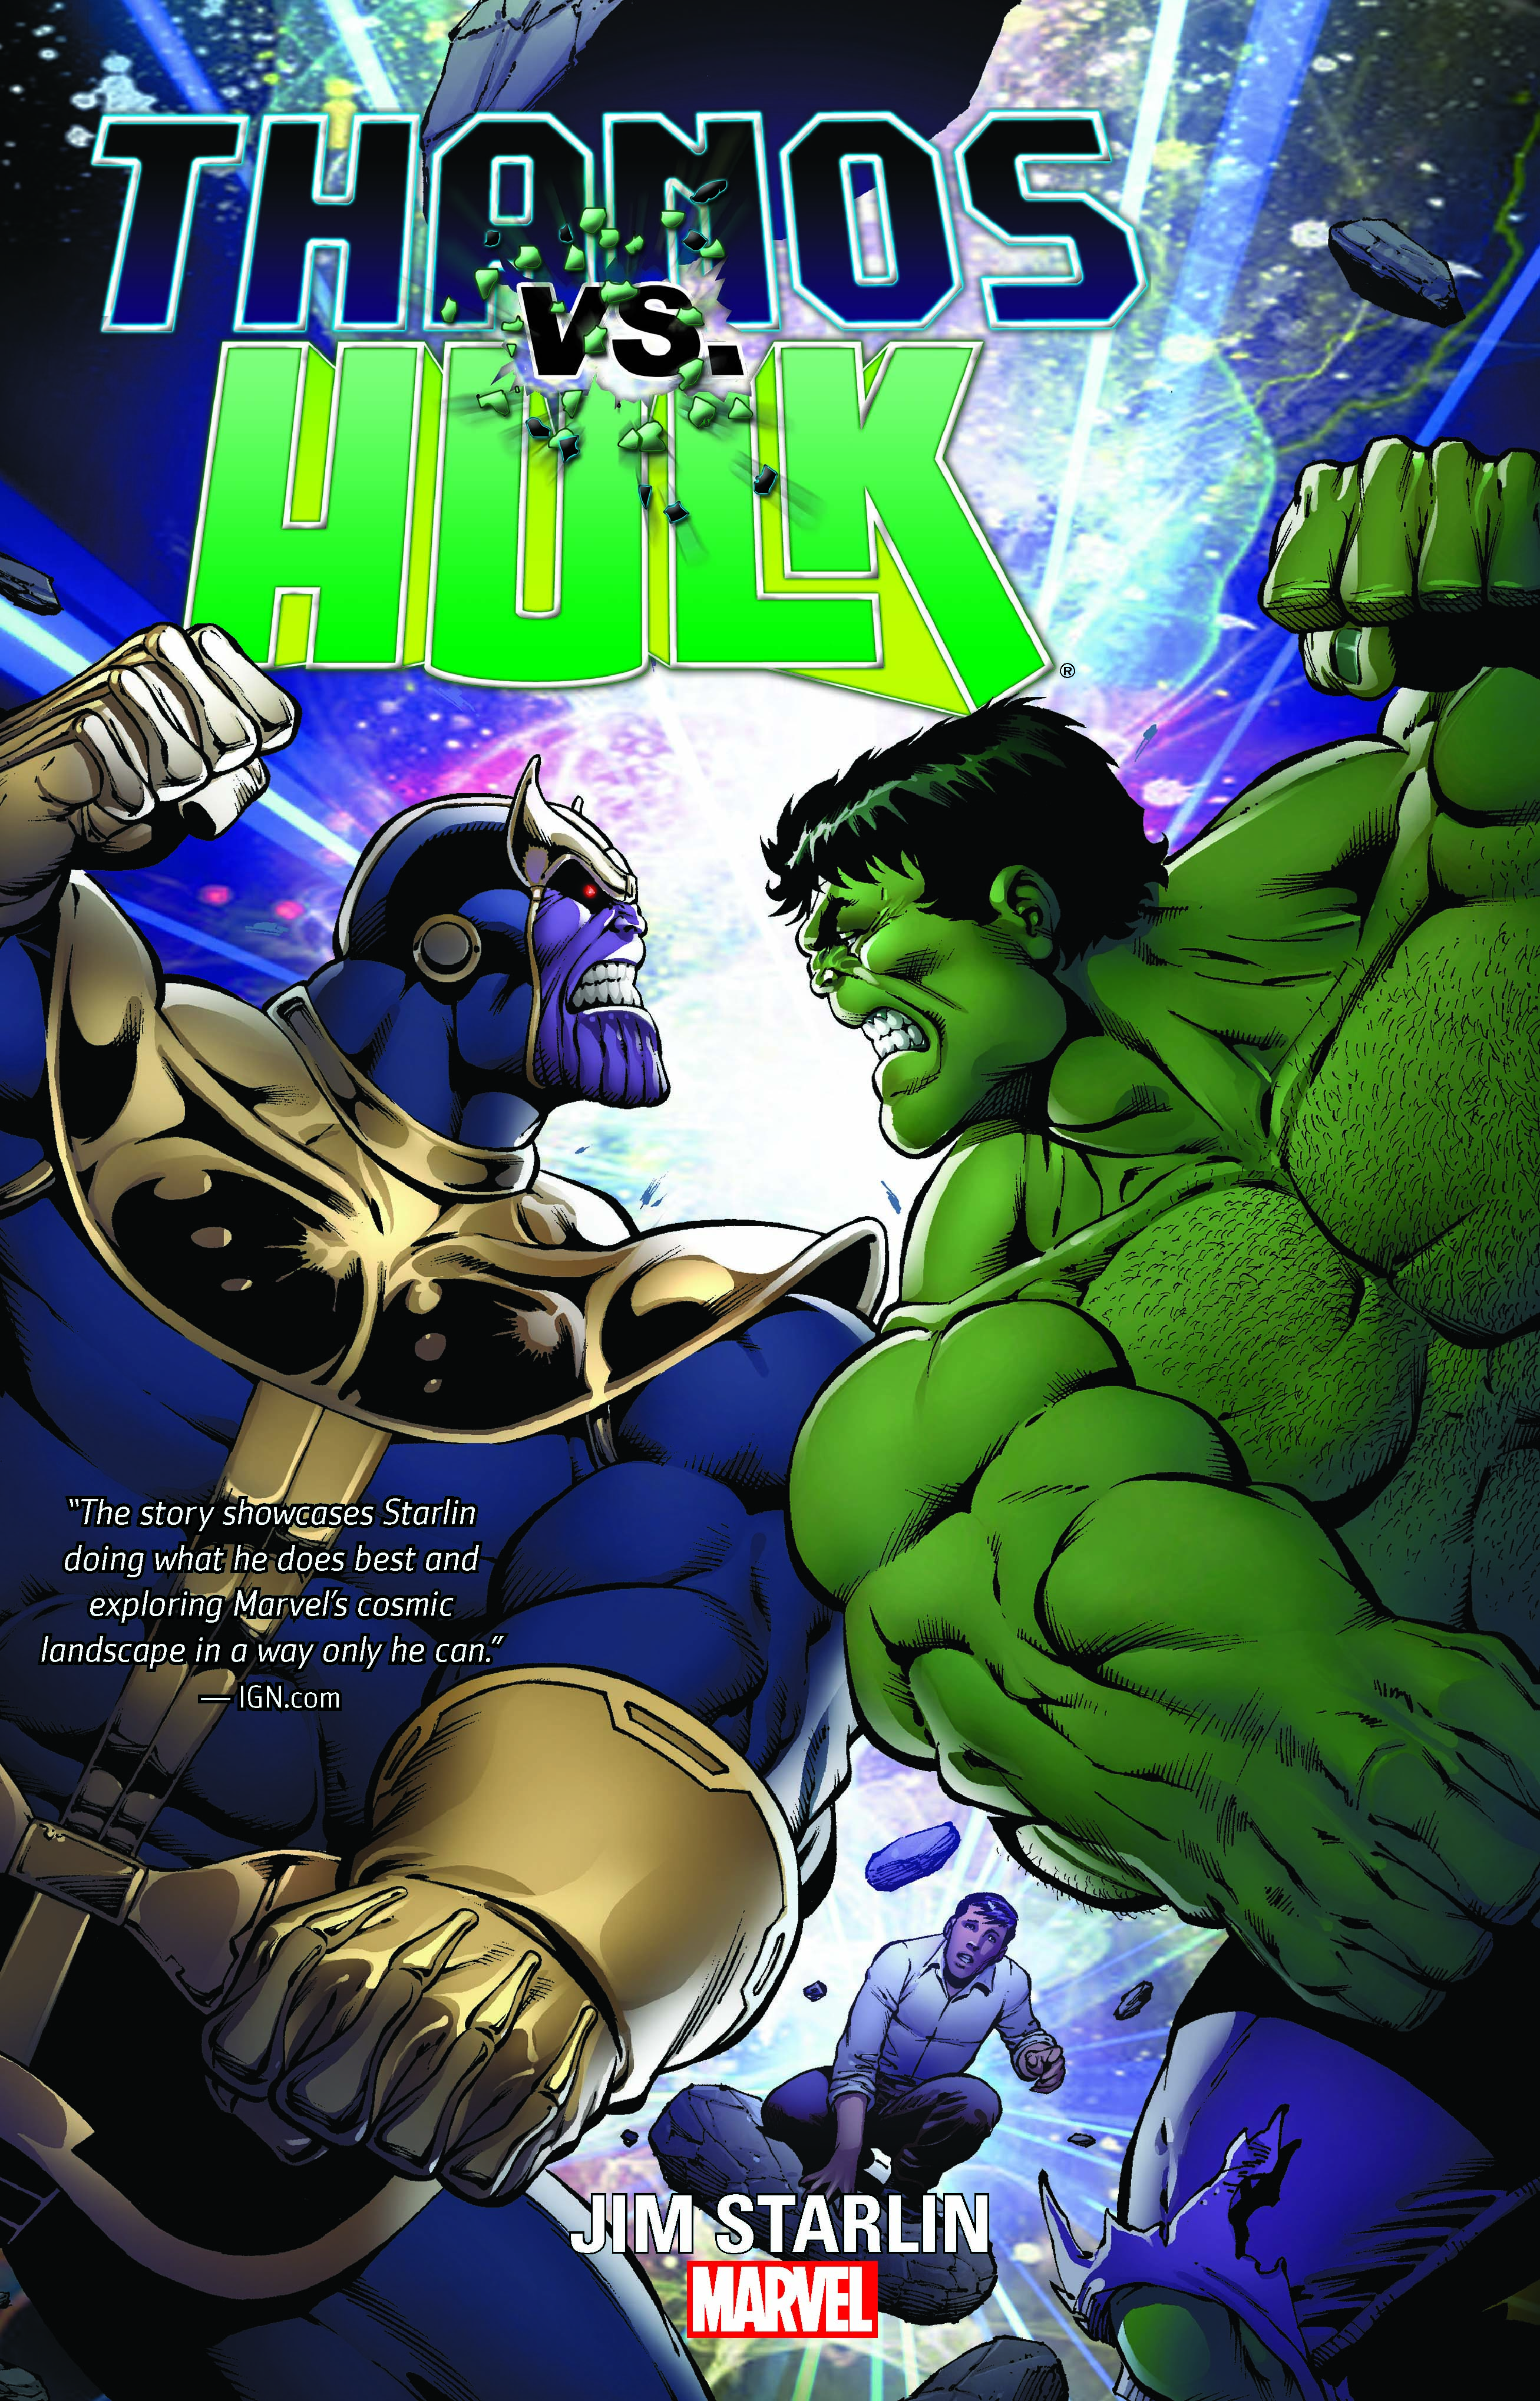 Hulk vs thanos comic